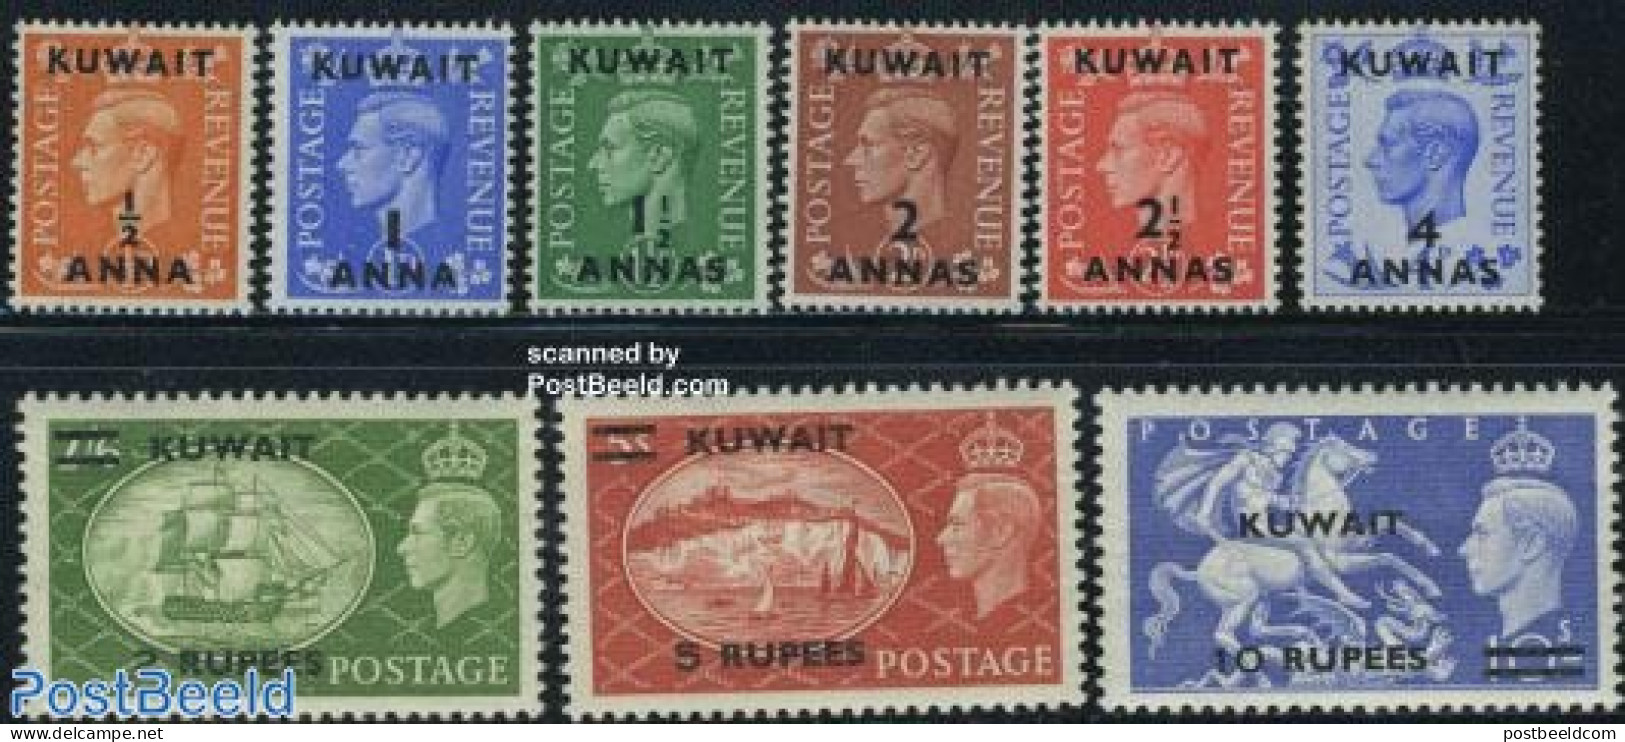 Kuwait 1950 Definitives 9v, Unused (hinged) - Kuwait